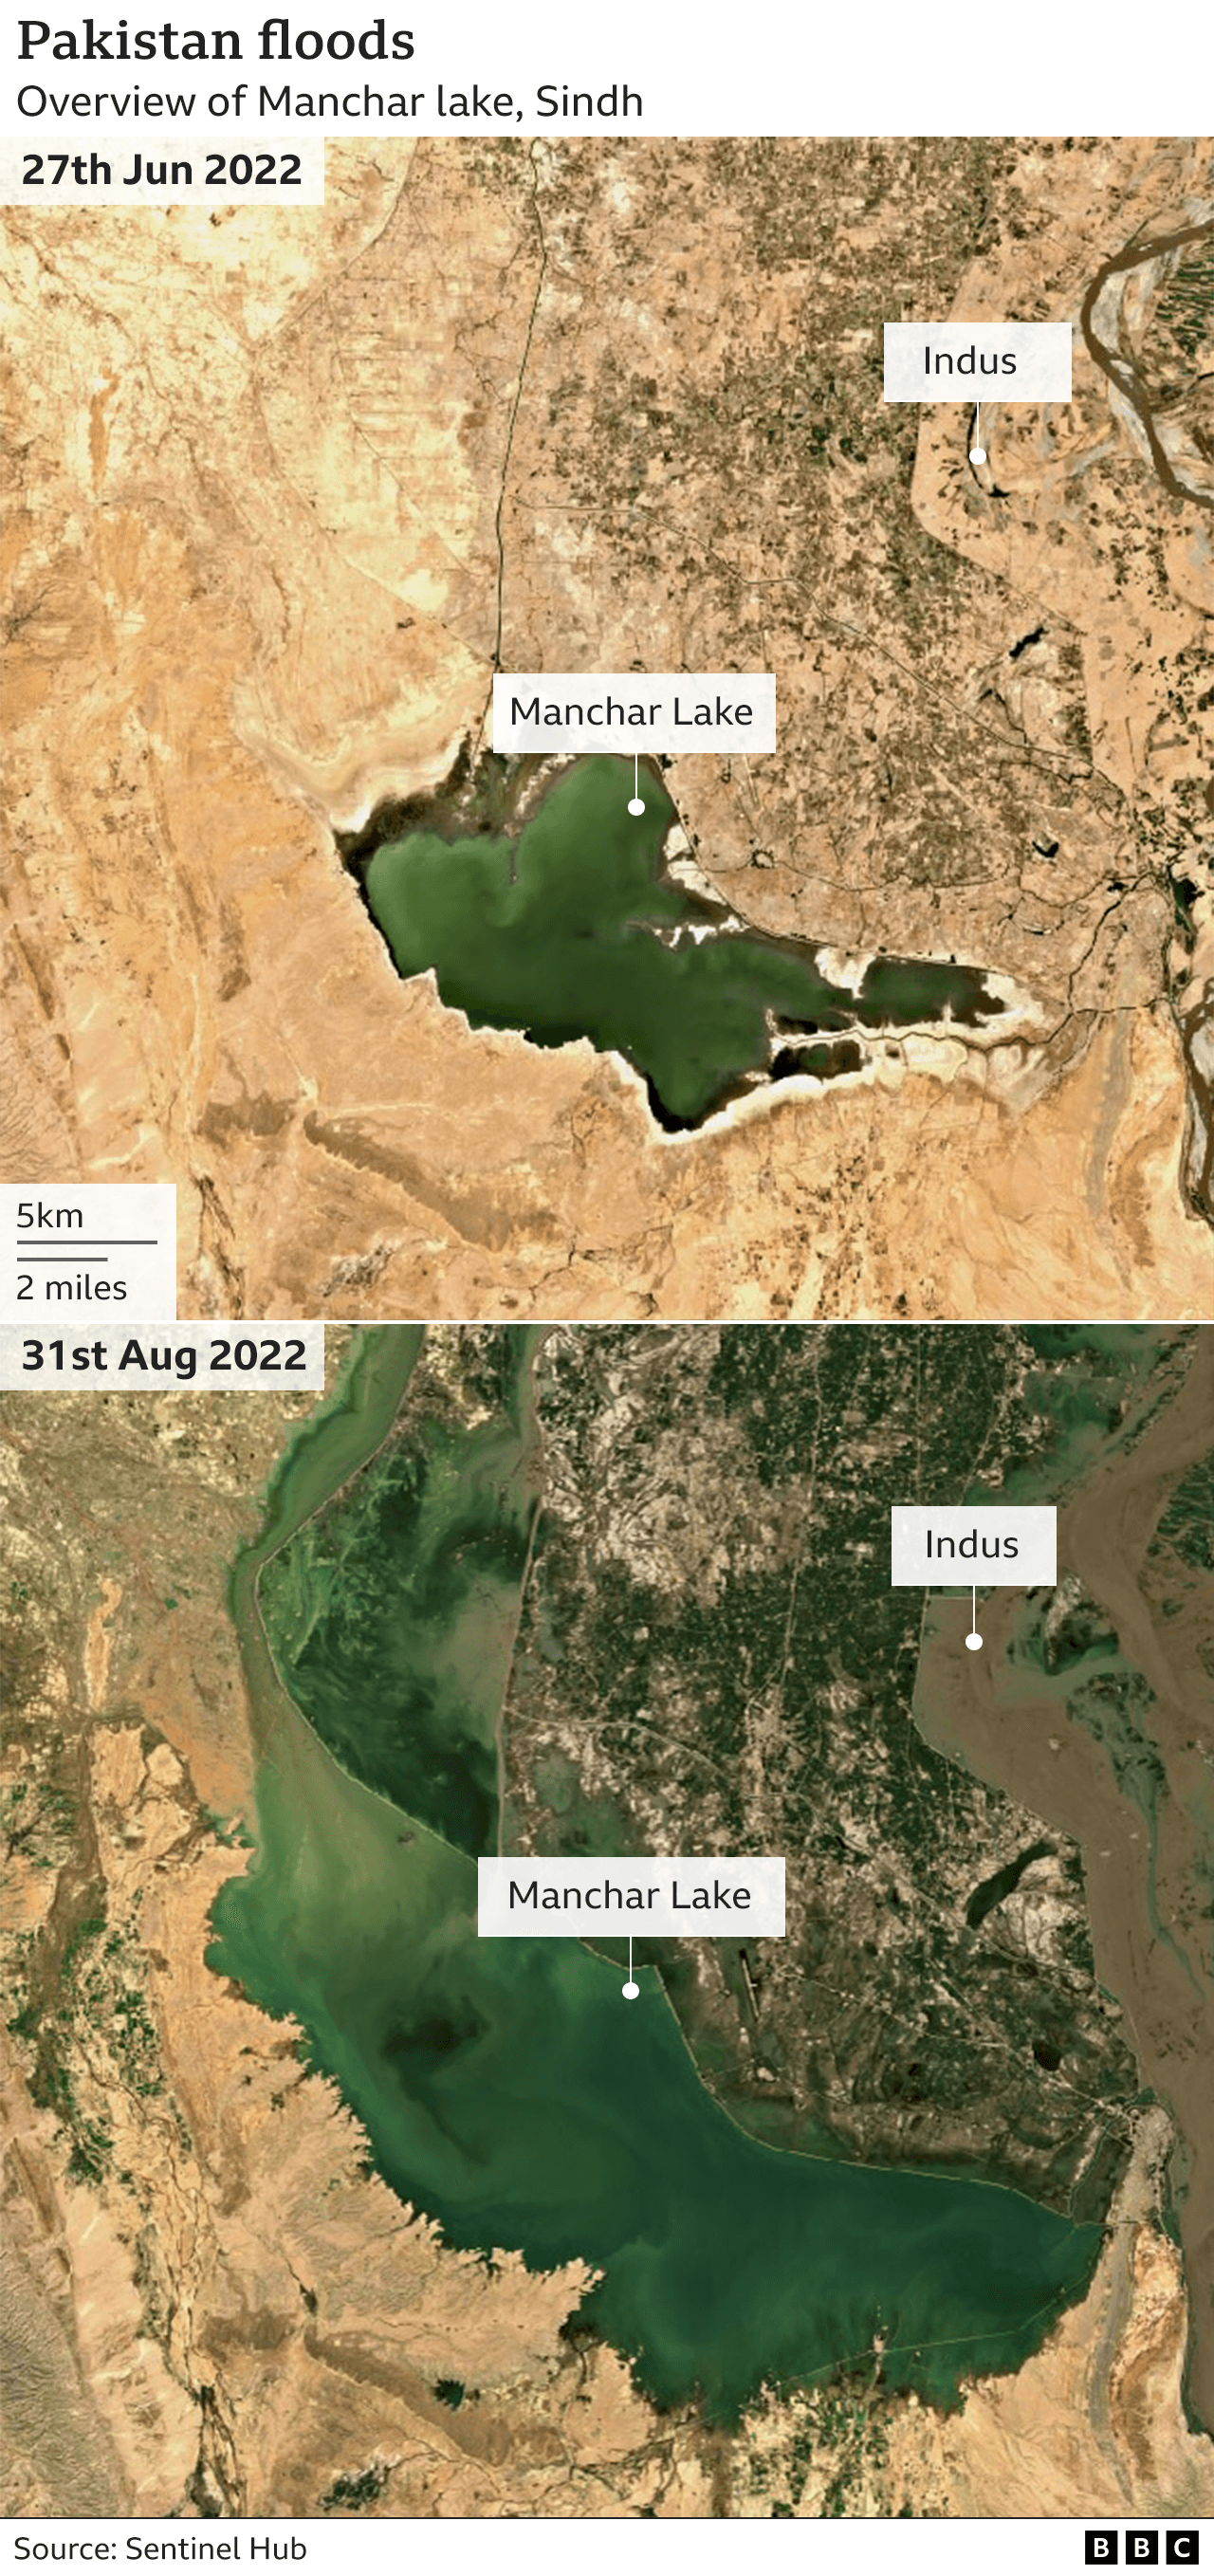 Manchar lake satellite images